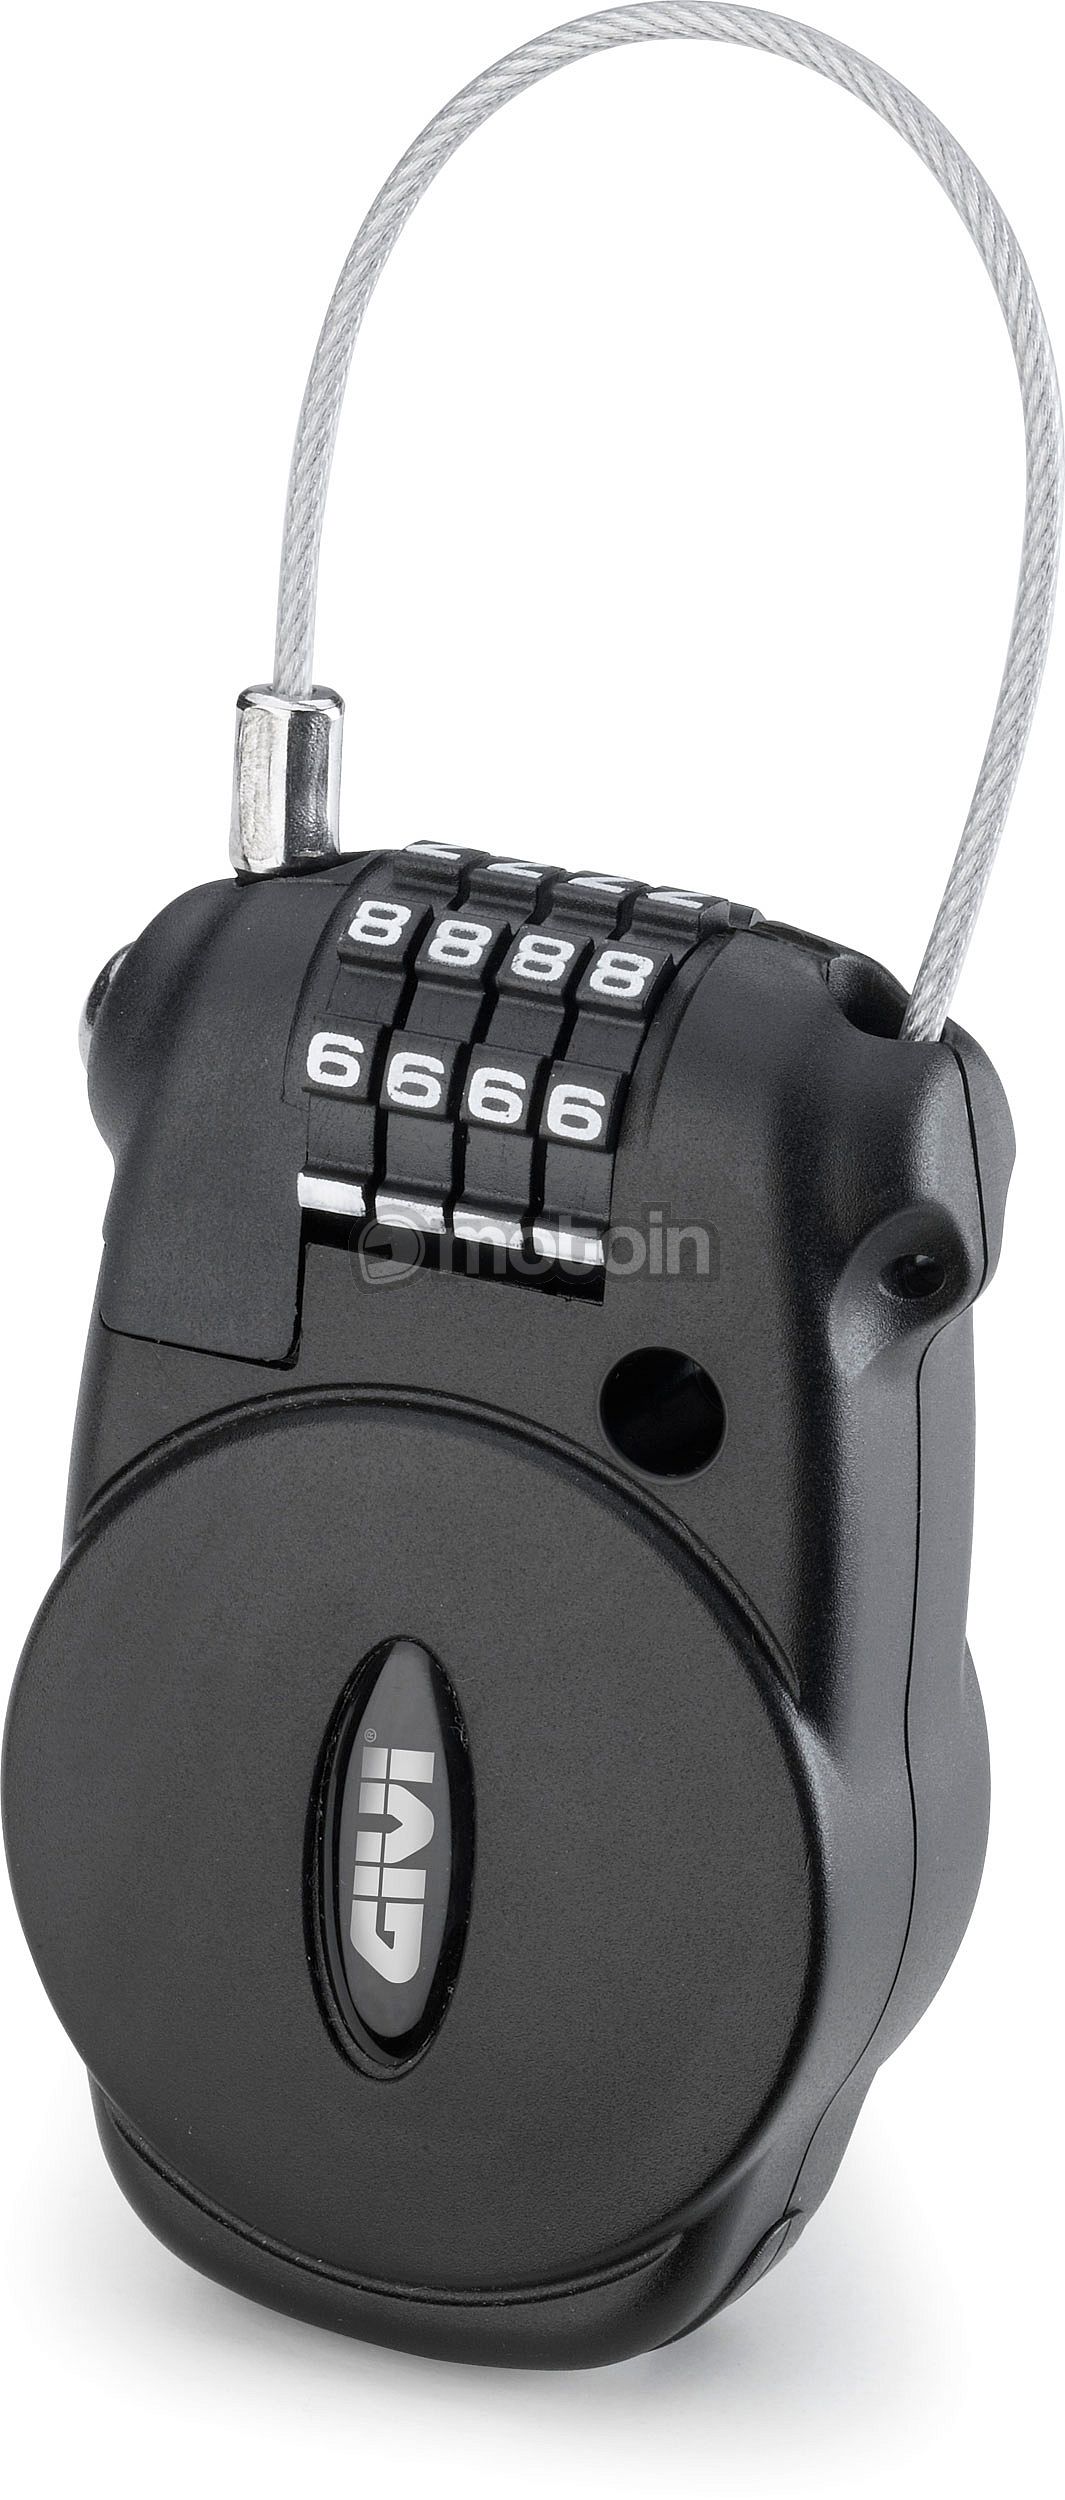 Givi S220, combination lock